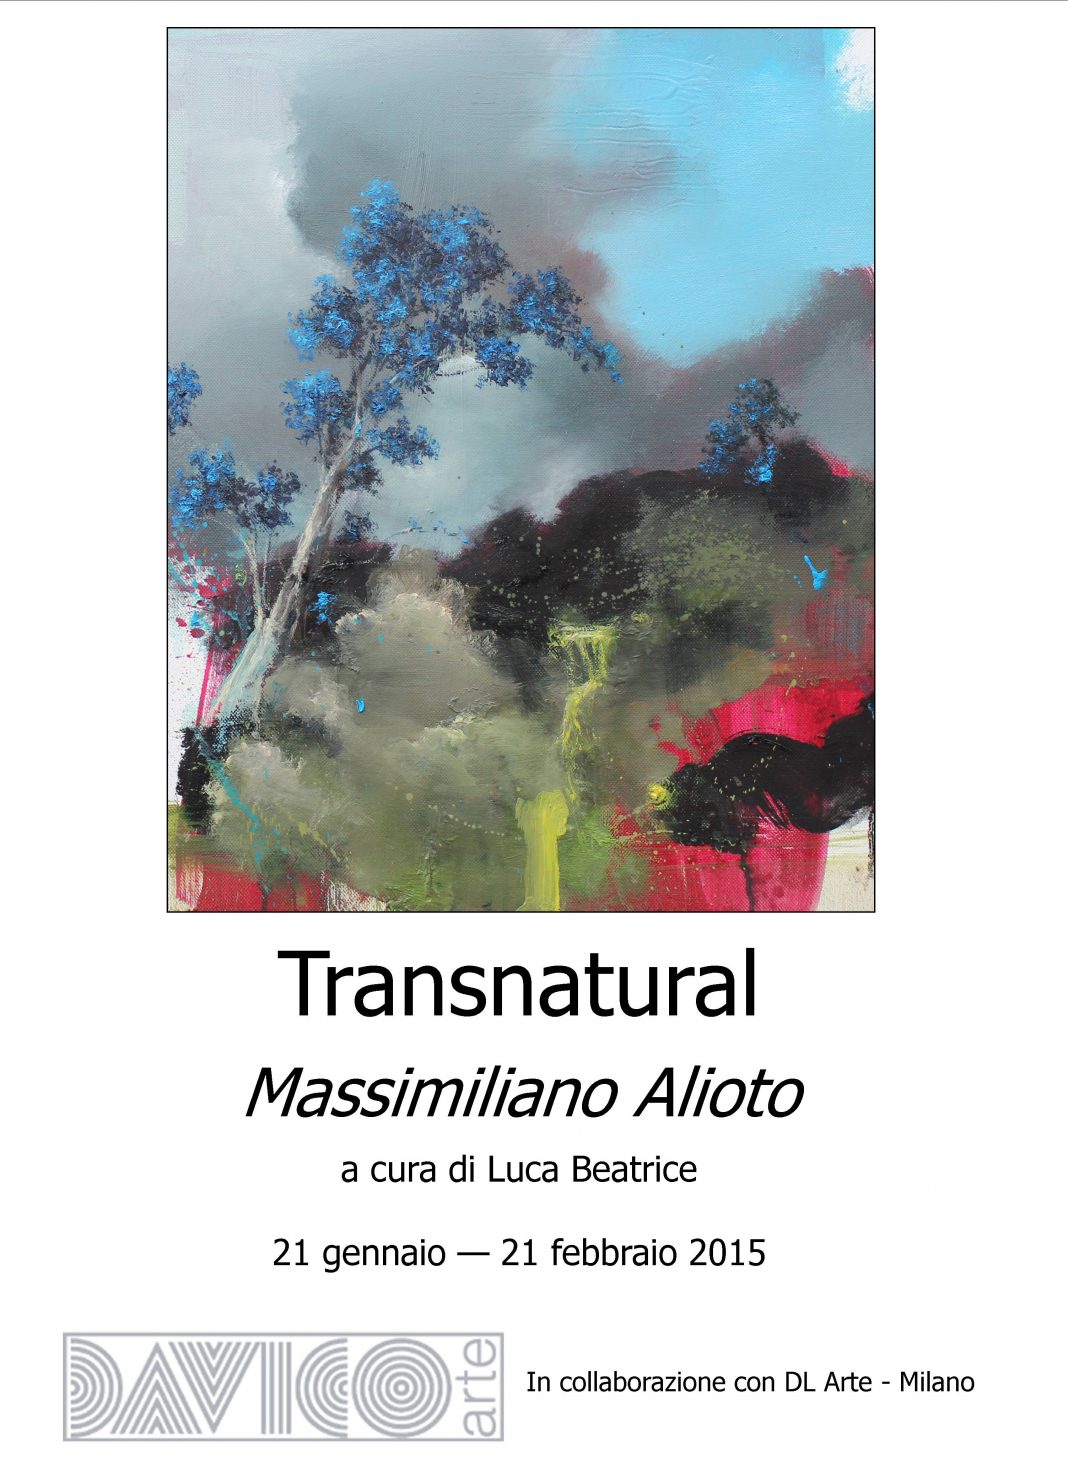 Massimiliano Alioto – Transnaturalhttps://www.exibart.com/repository/media/eventi/2015/01/massimiliano-alioto-8211-transnatural-1068x1473.jpg